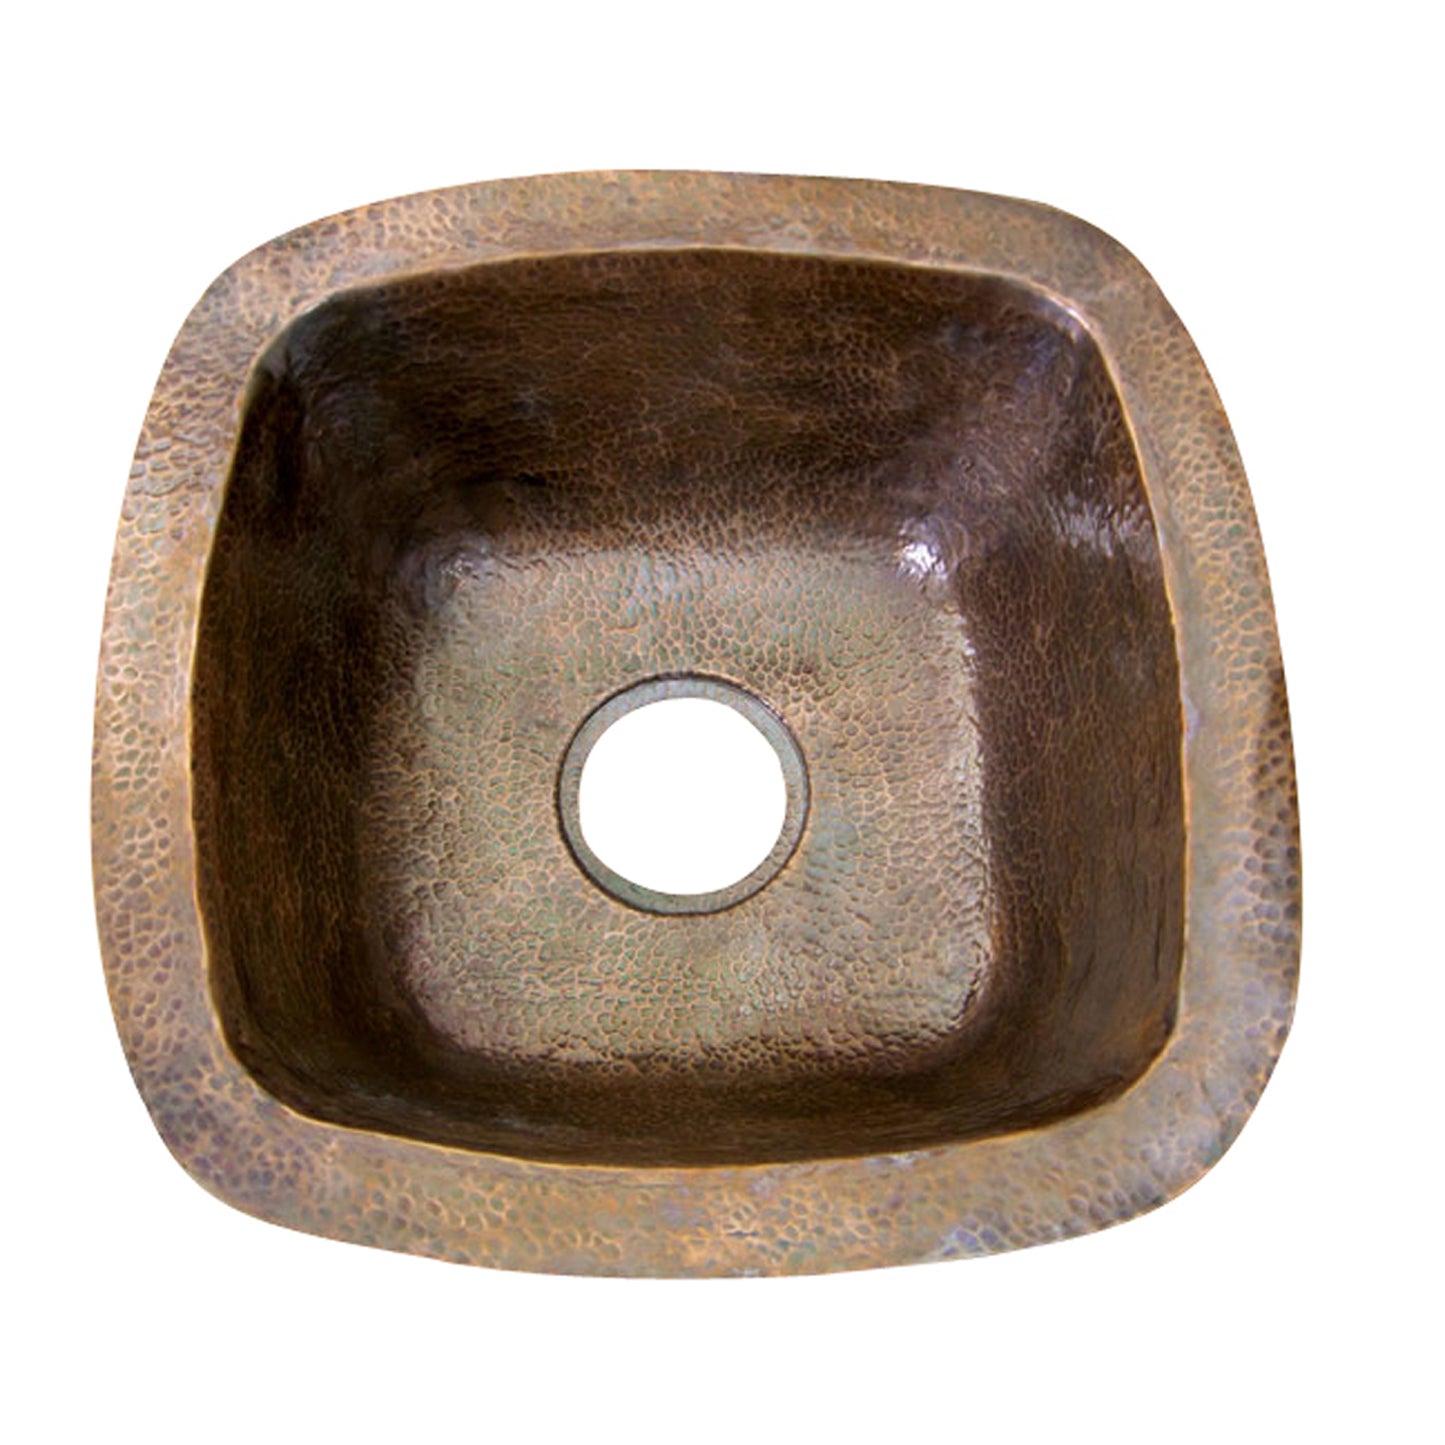 Trent Hammered Antique Copper 18" Prep or Bar Sink